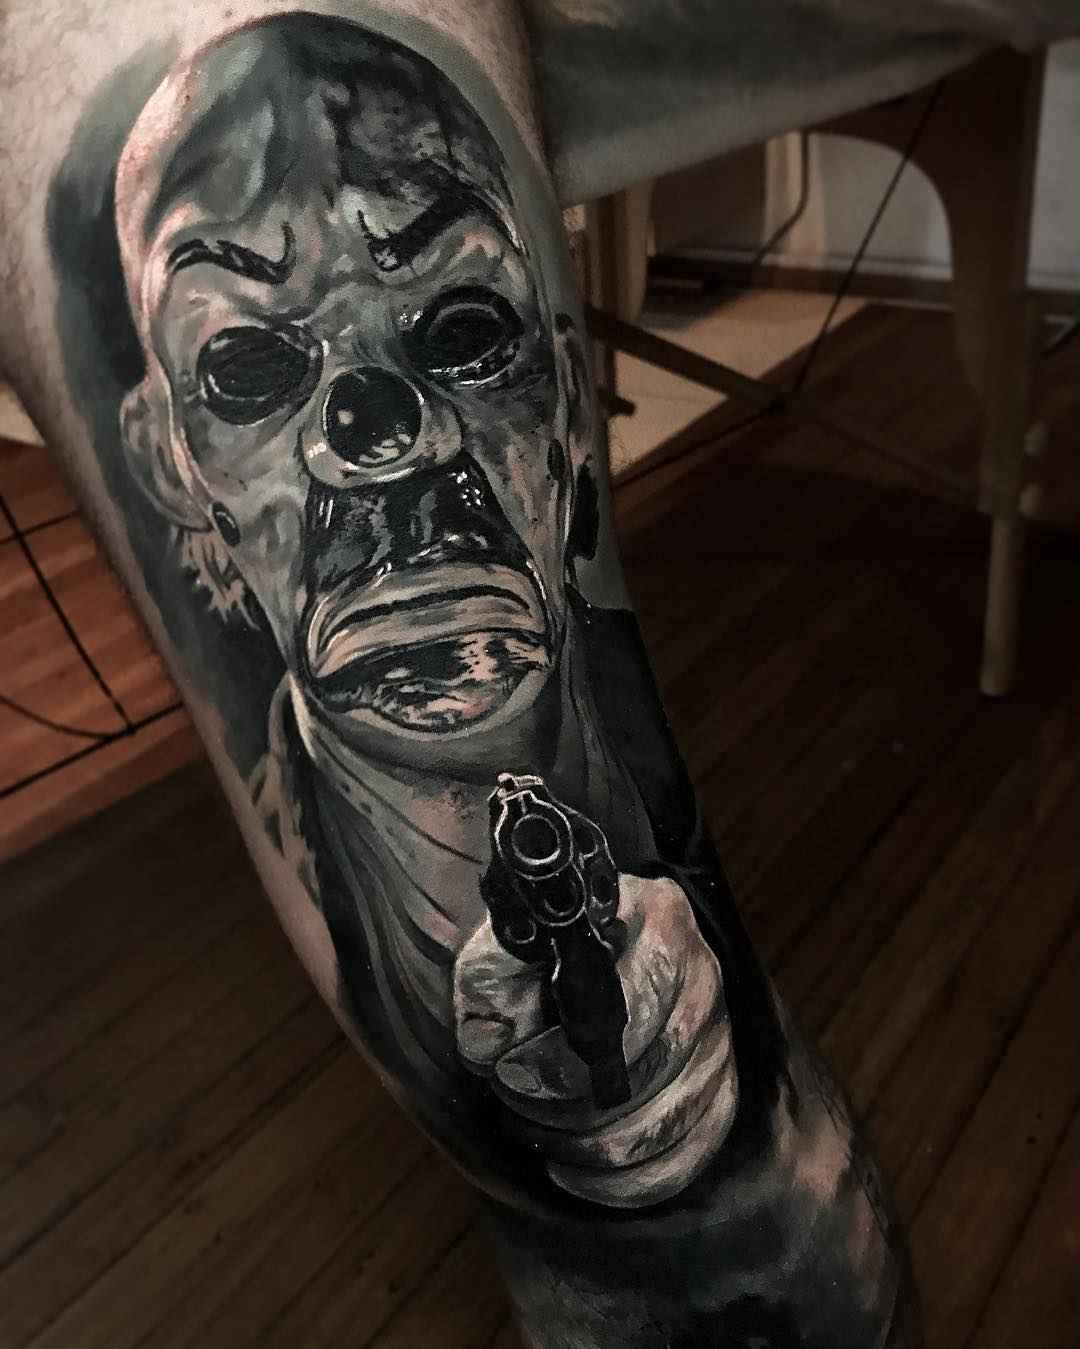 Tattoo artist Damon Holleis